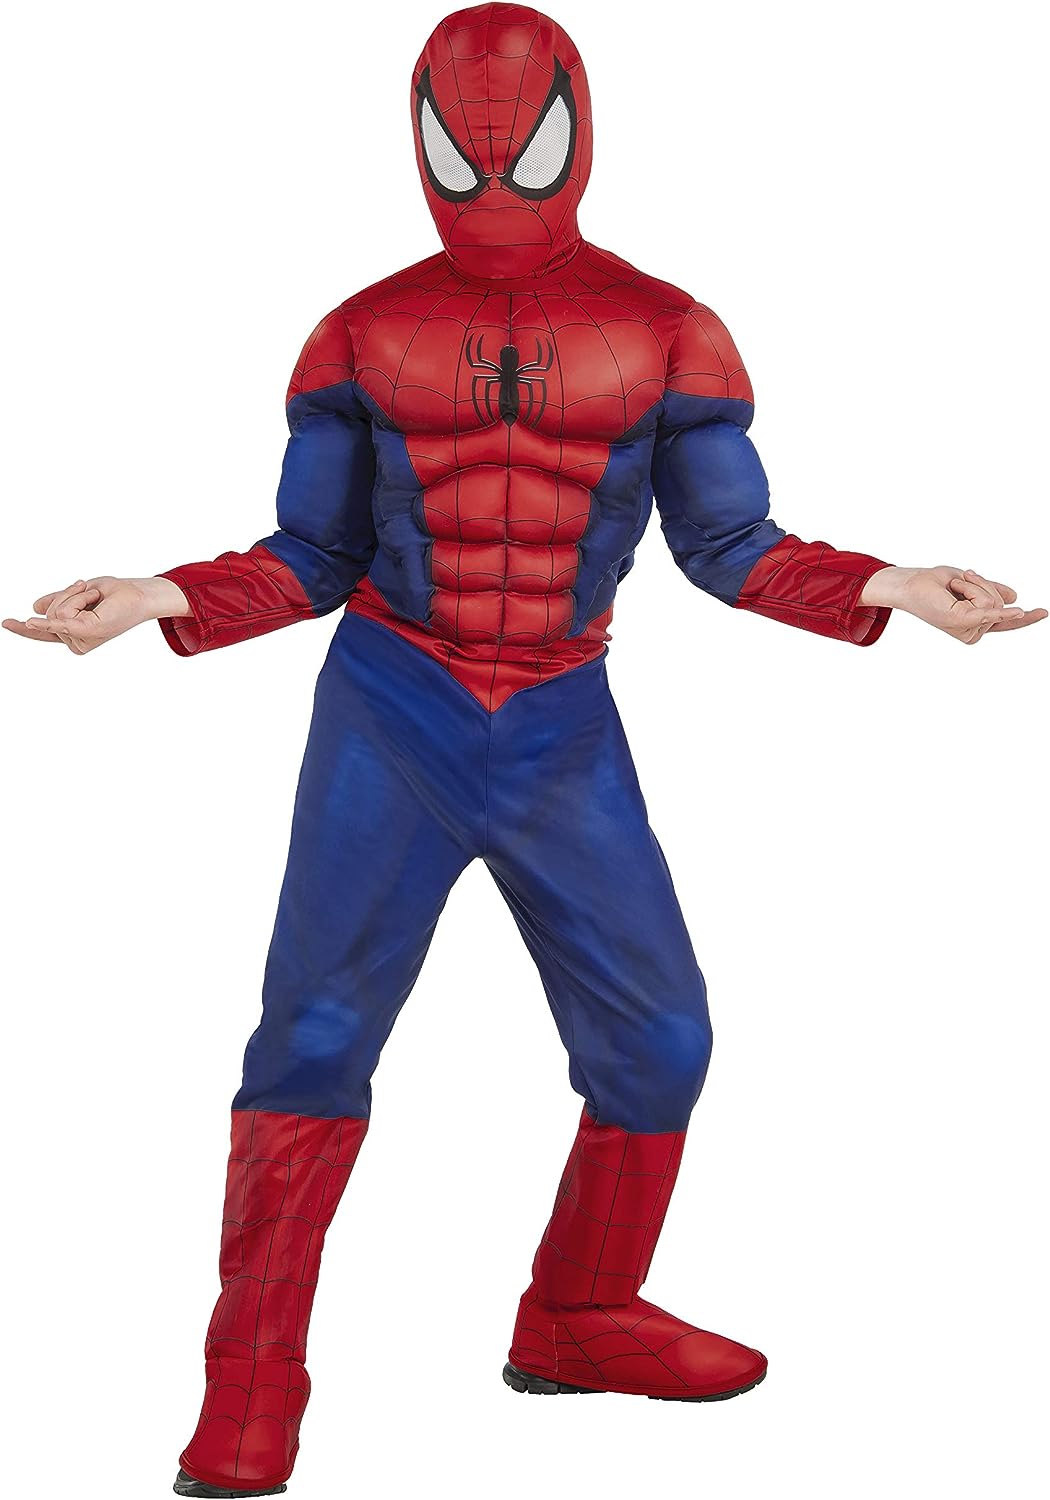 Rubies 620010 - Spider-Man Kostüm - Deluxe - Marvel - S - ca. 3 - 4 Jahre